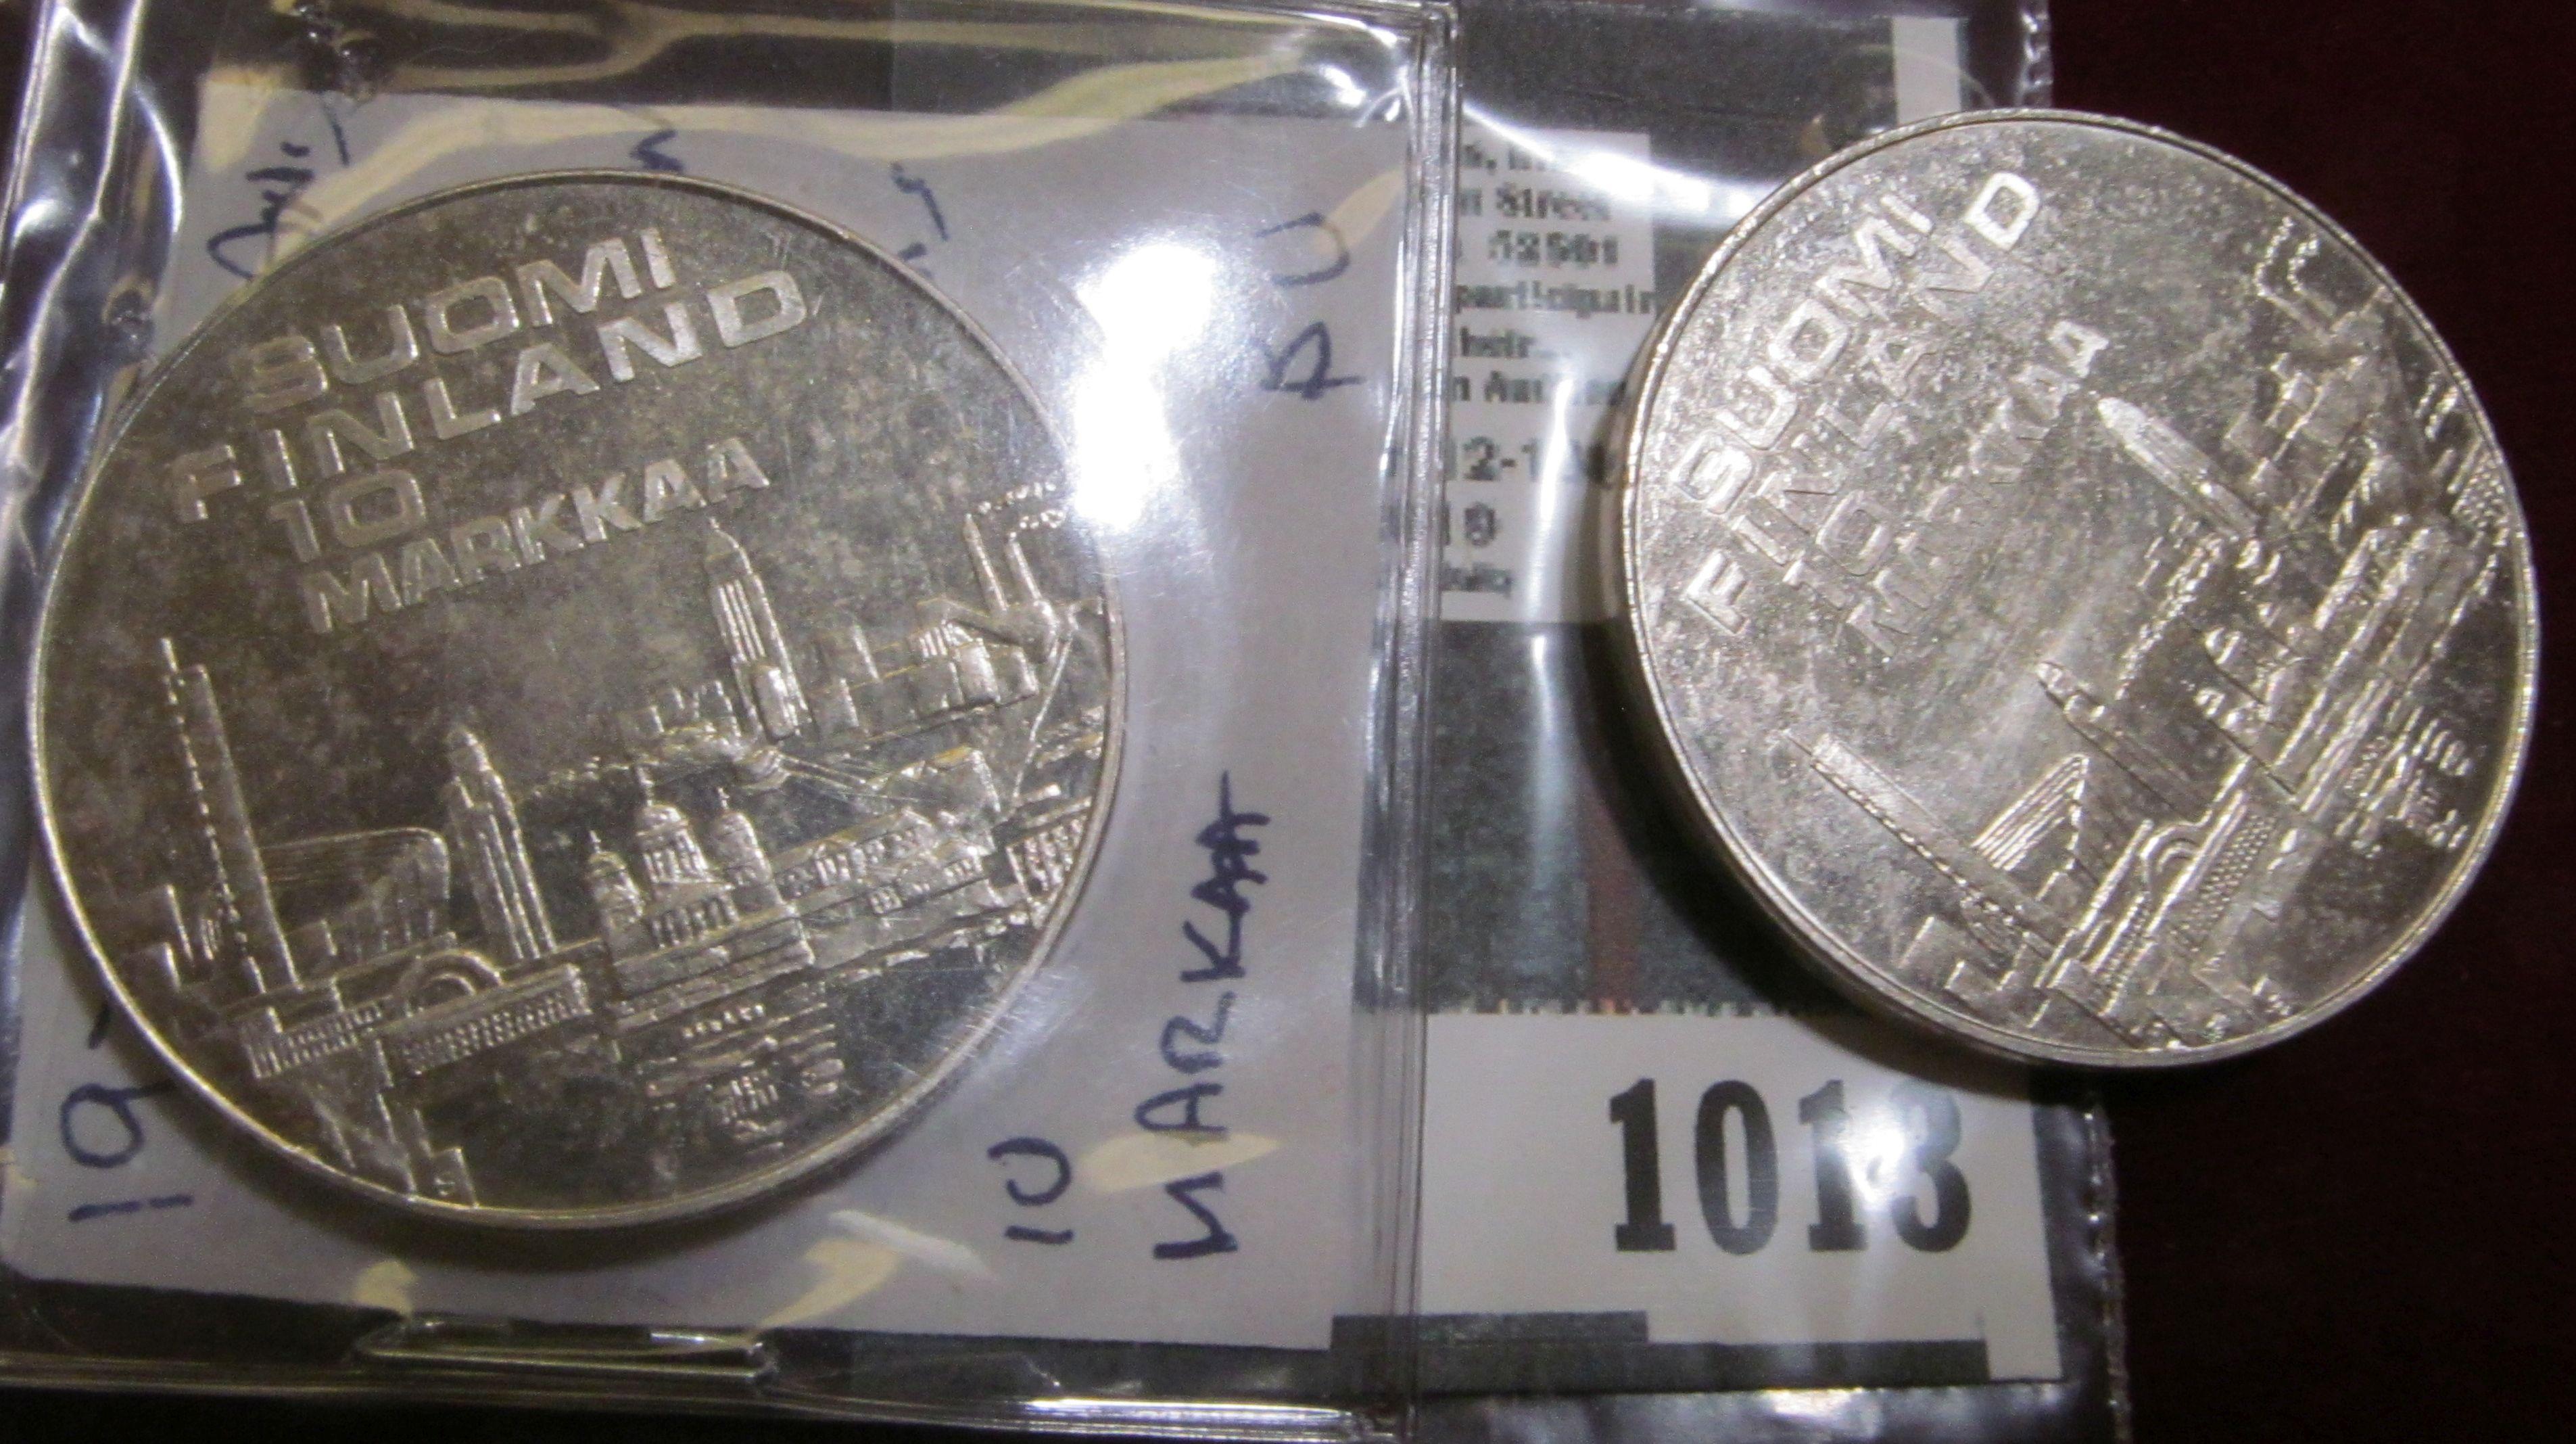 (2) 1971 Finland Silver 10 Markaa coins.